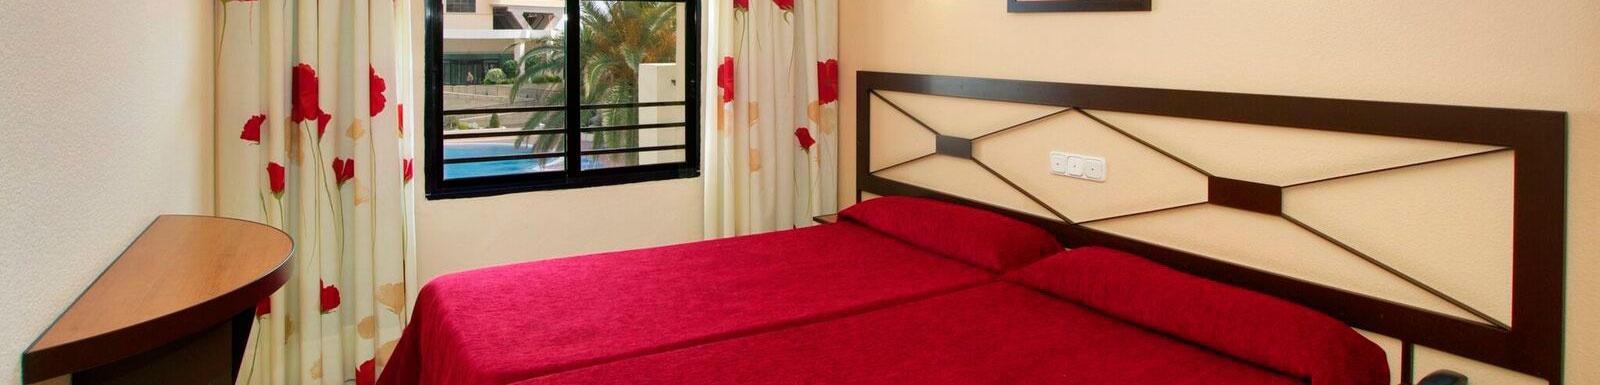 una habitación de hotel con una cama roja y una ventana .